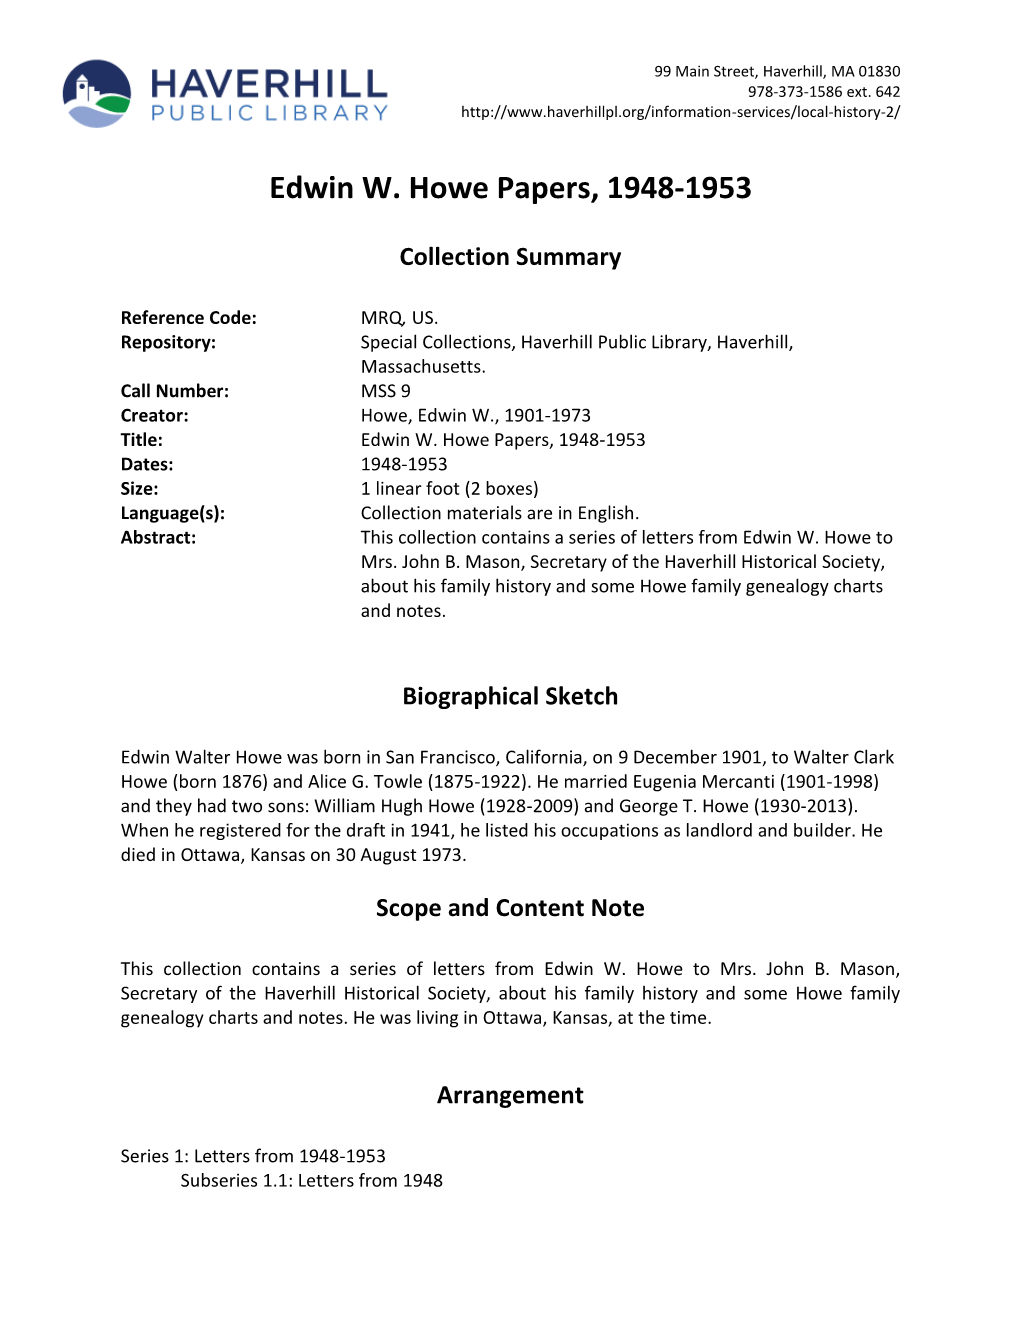 Edwin W. Howe Papers, 1948-1953